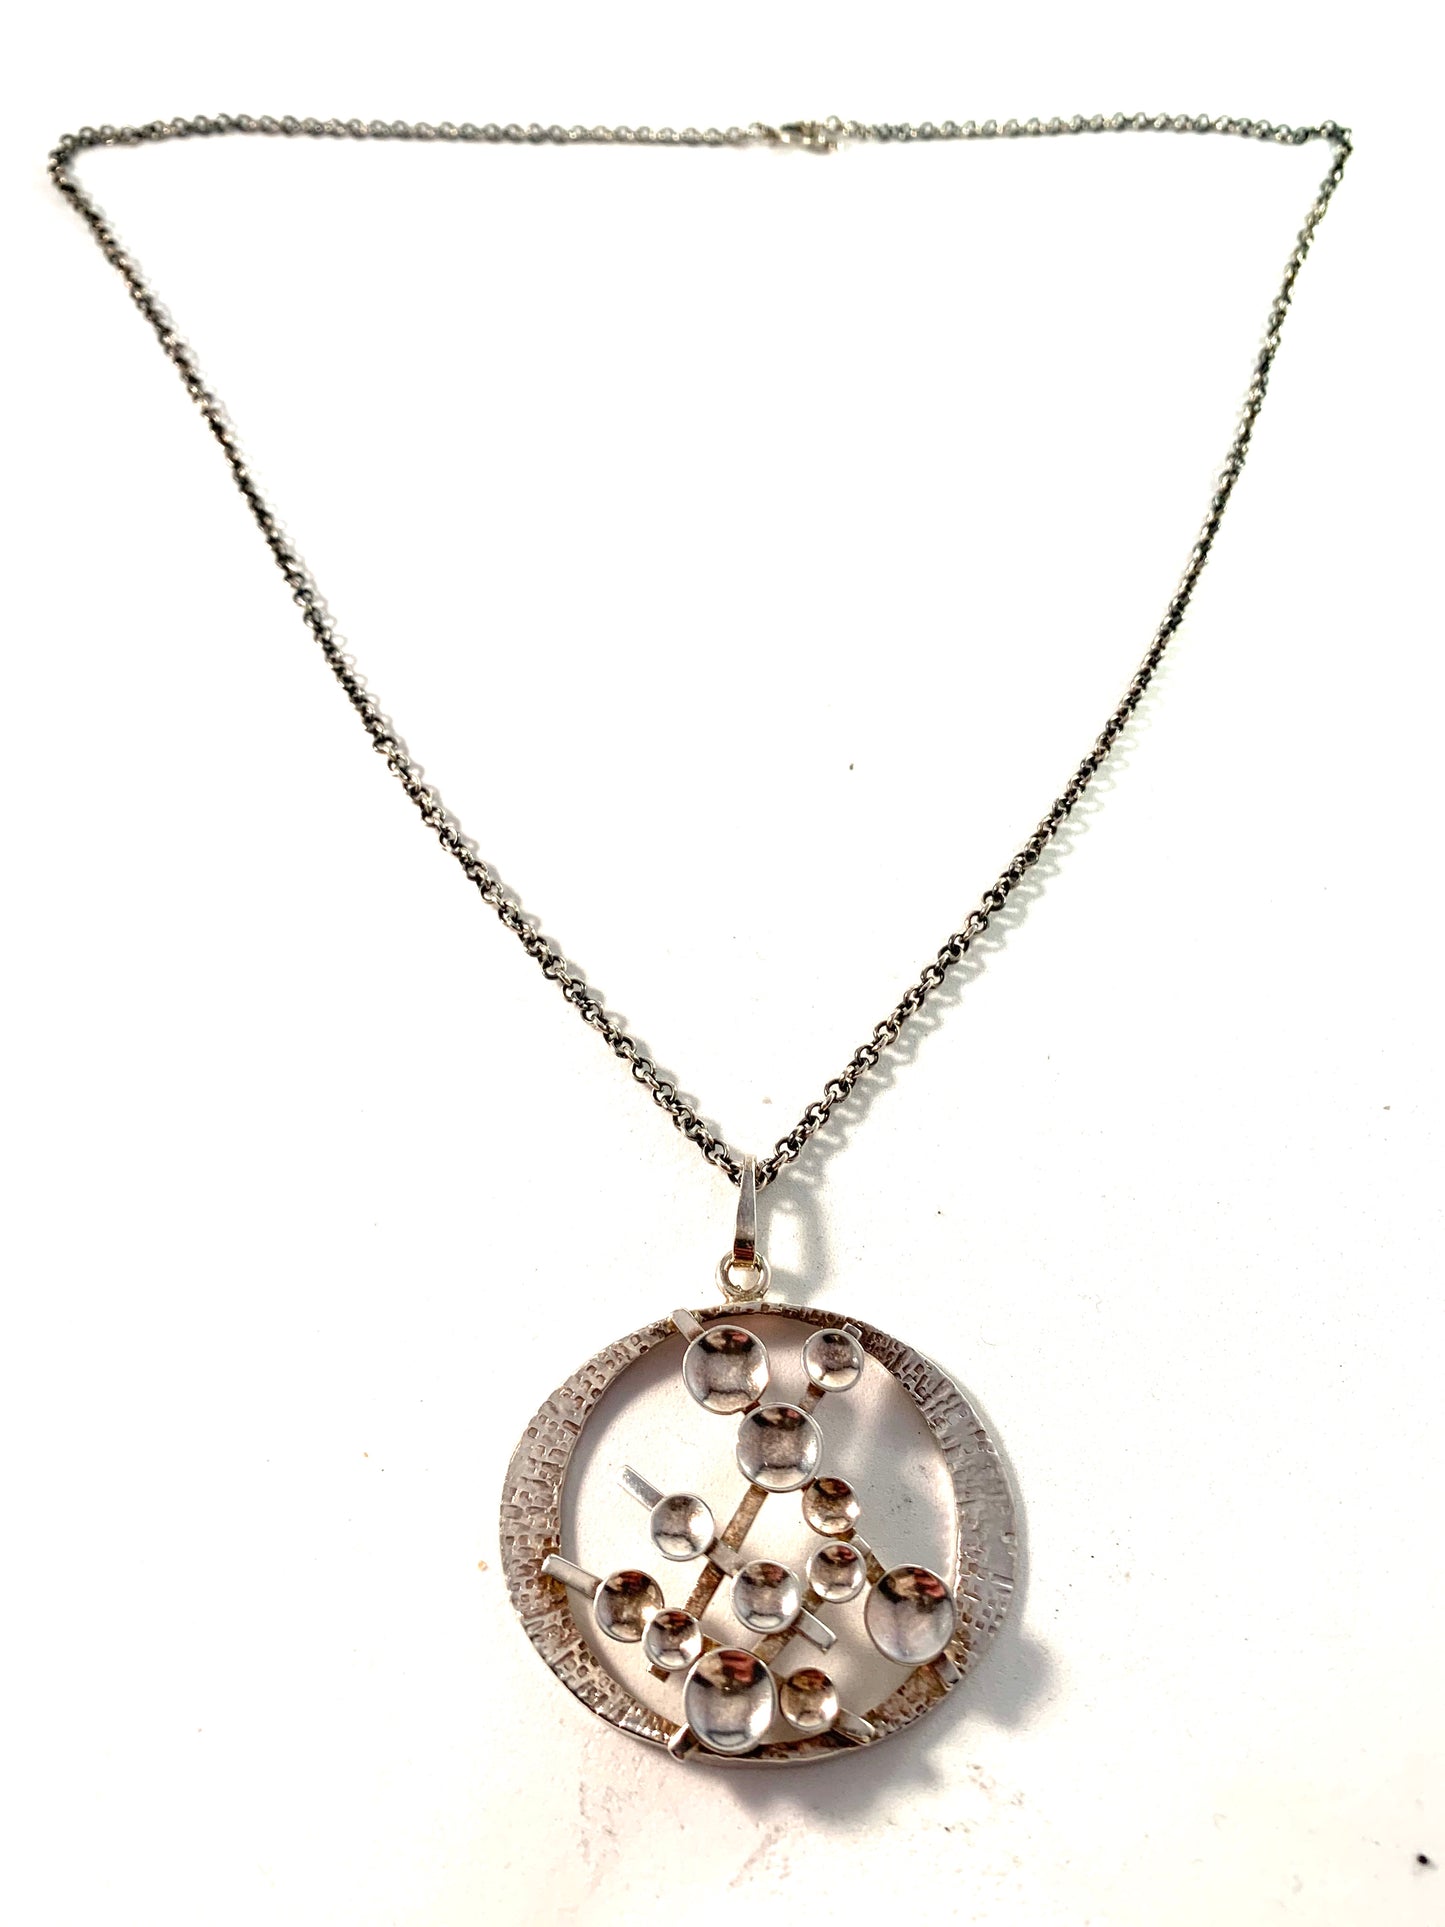 Claes E Giertta, Stockholm Vintage Sterling Silver Large Pendant Necklace. Signed